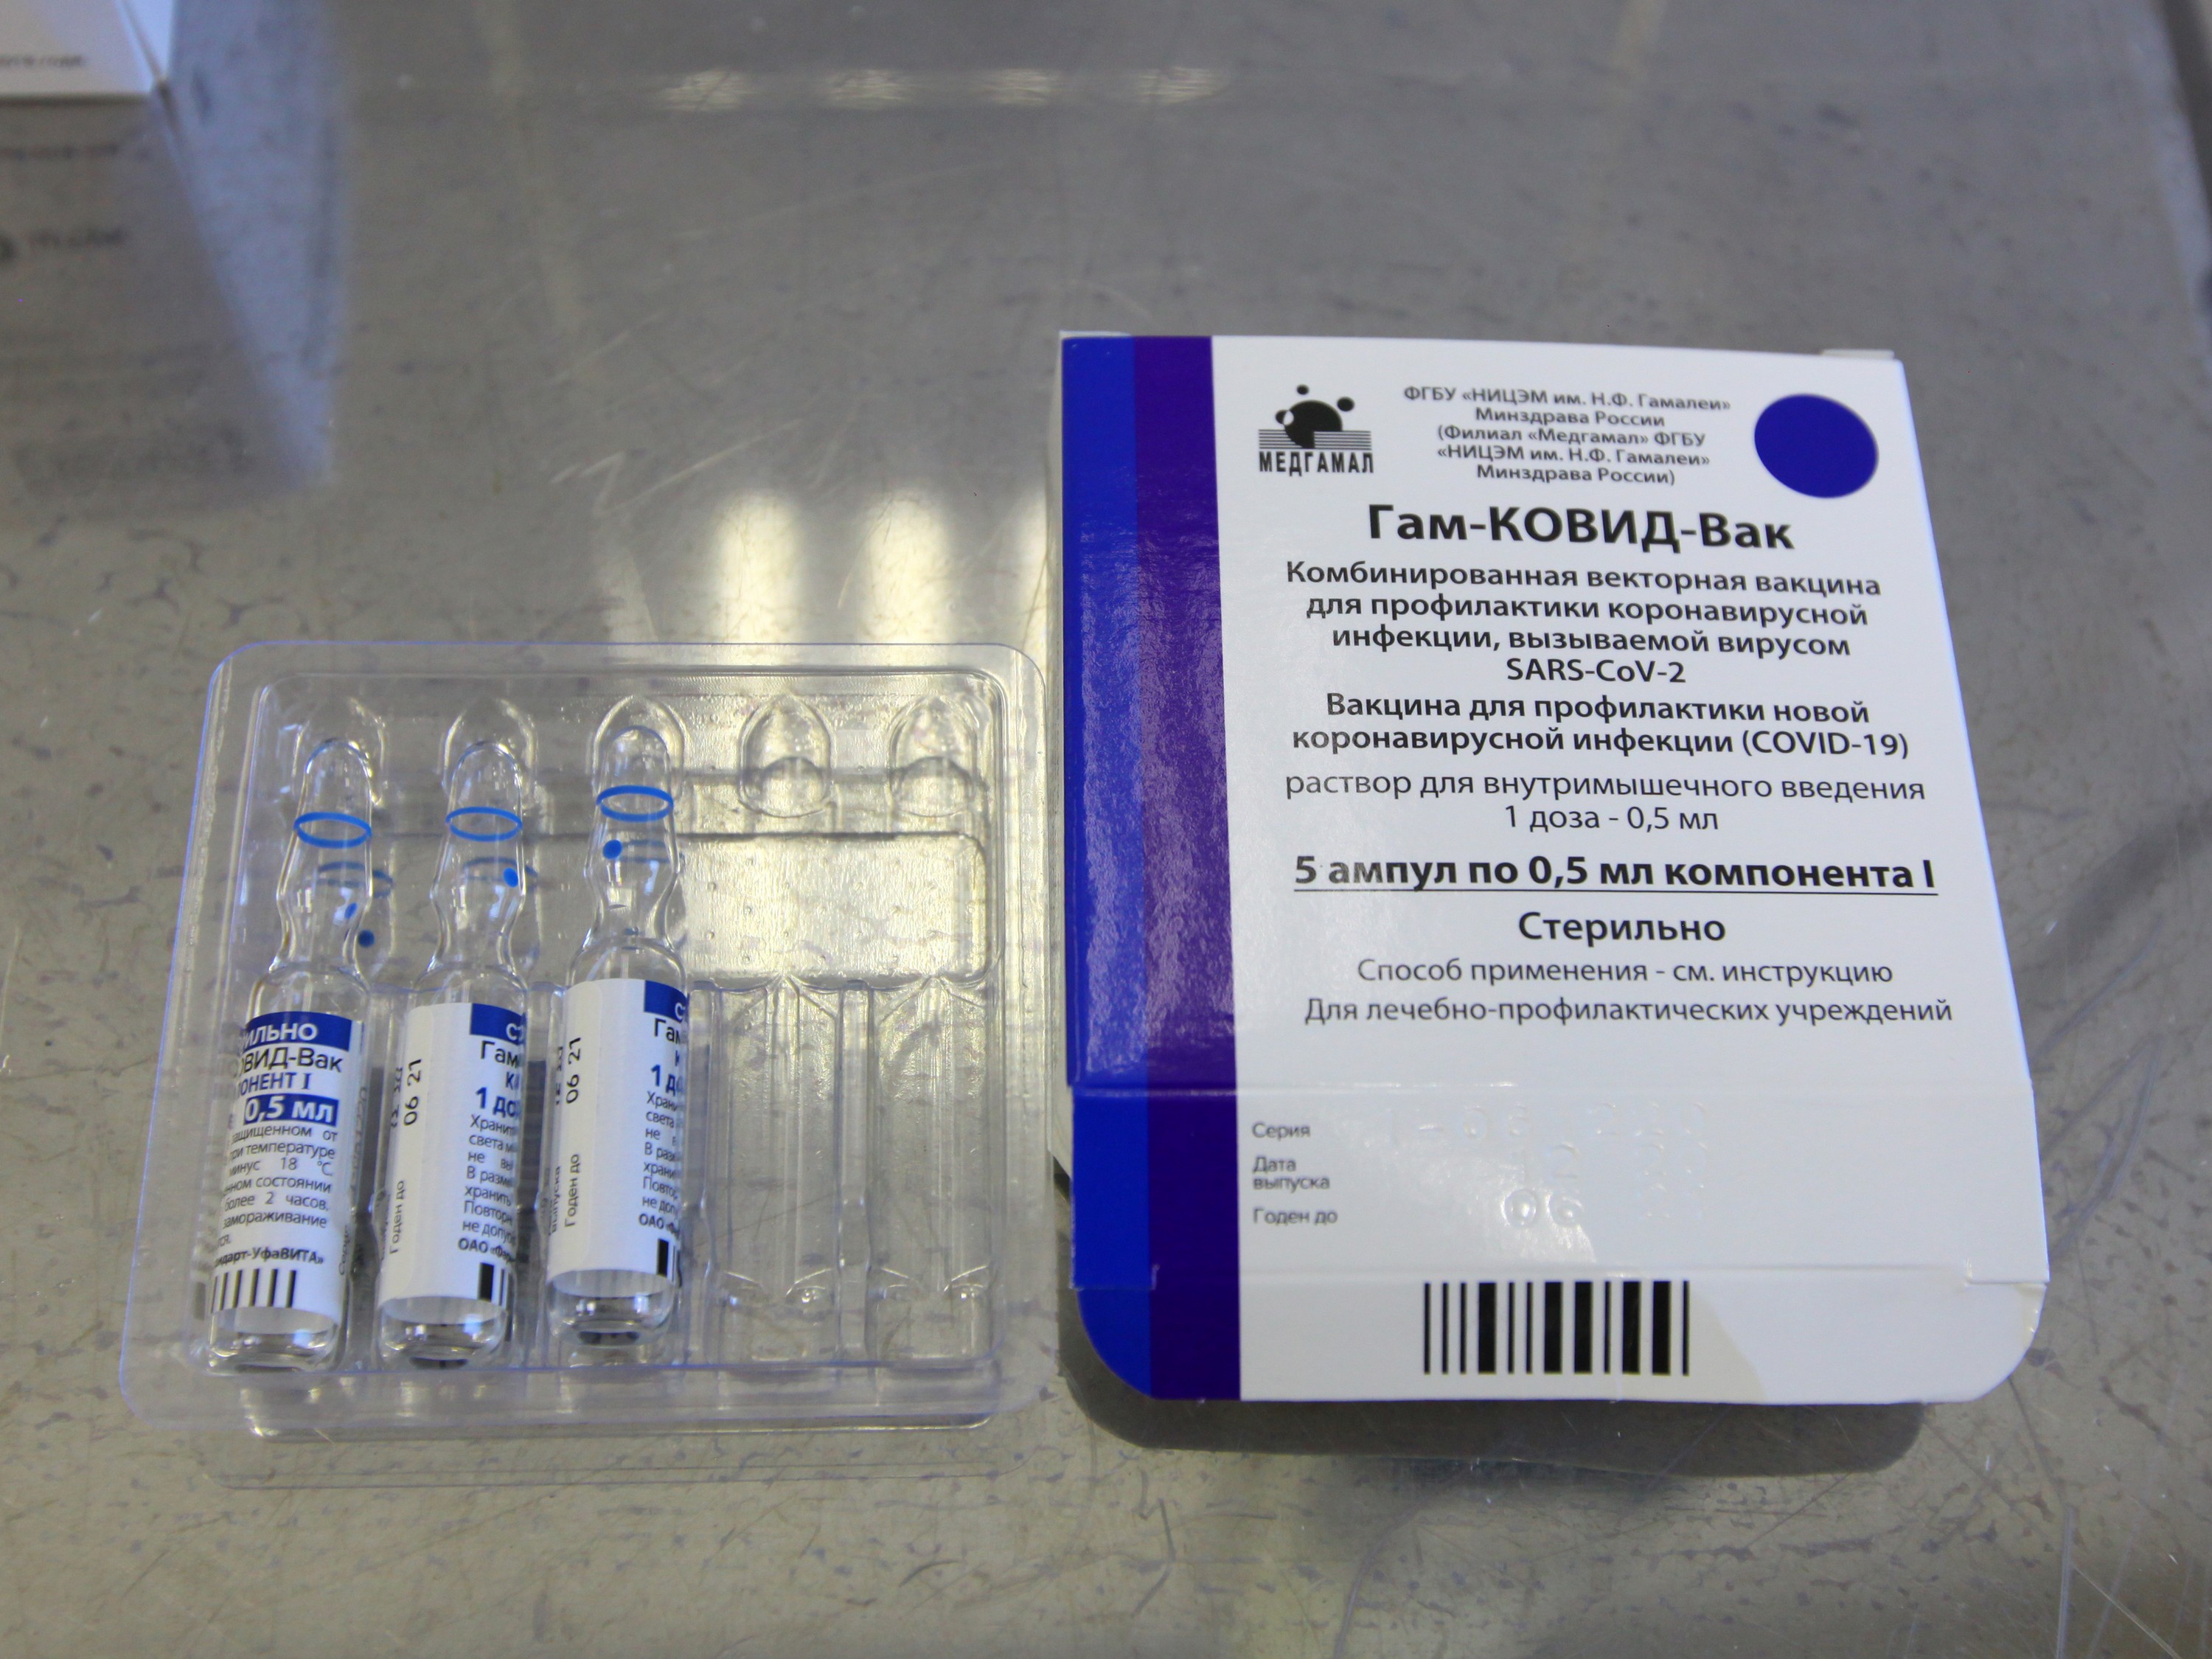 Челябинцев начнут прививать от коронавируса в ТРК с 20 марта*1